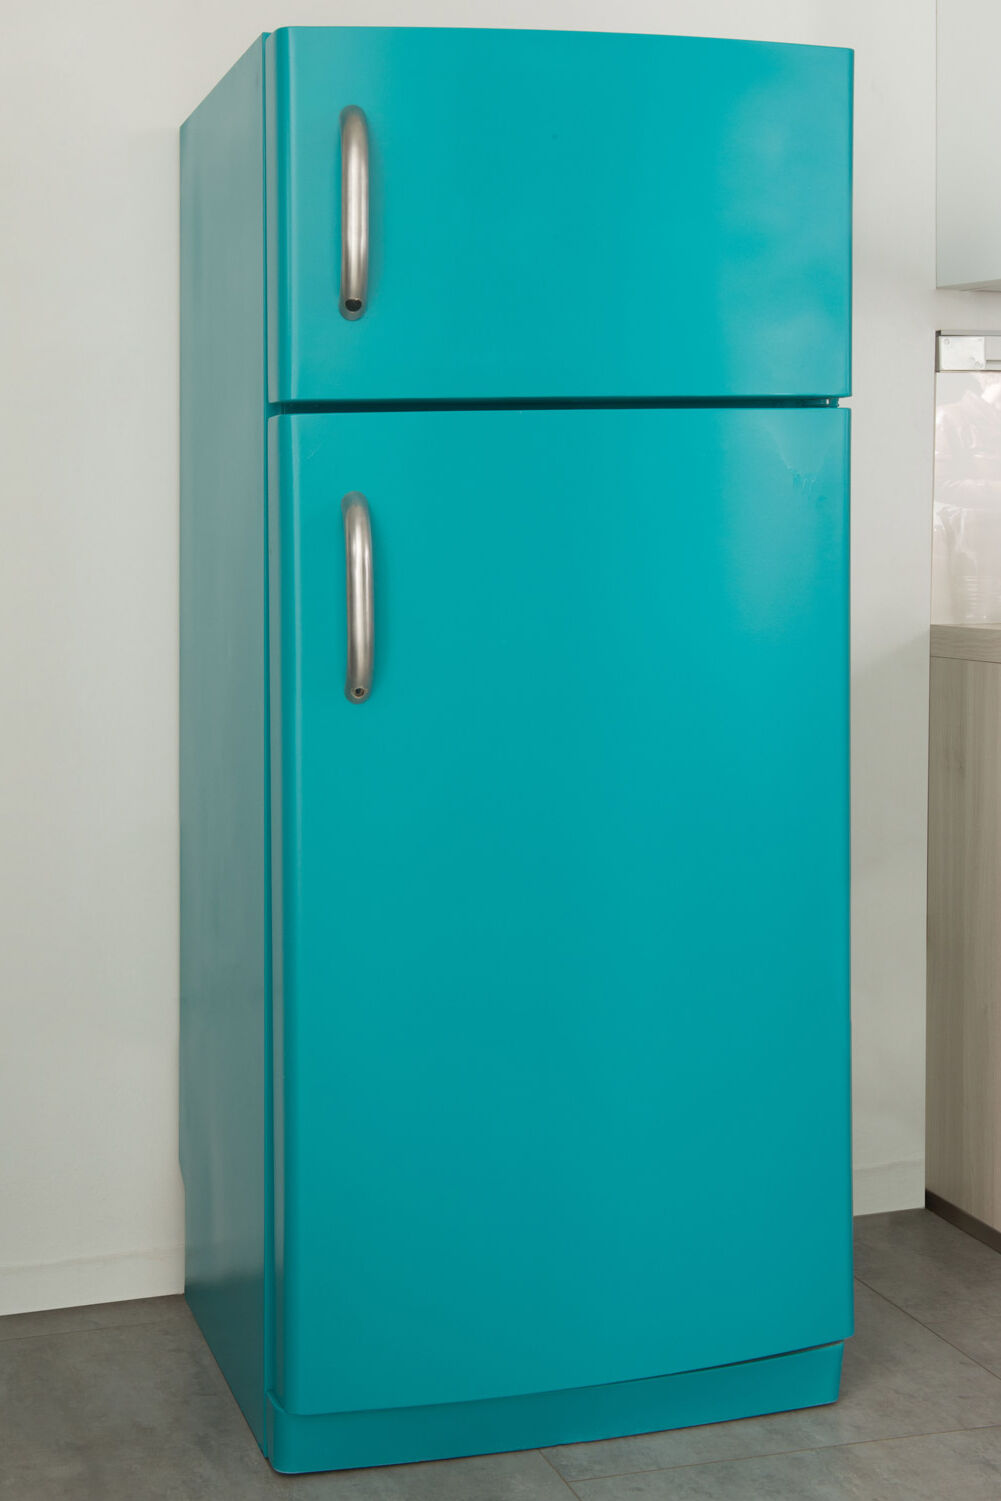 Kühlschrank lackieren im bunten Retro-Chic, How-To